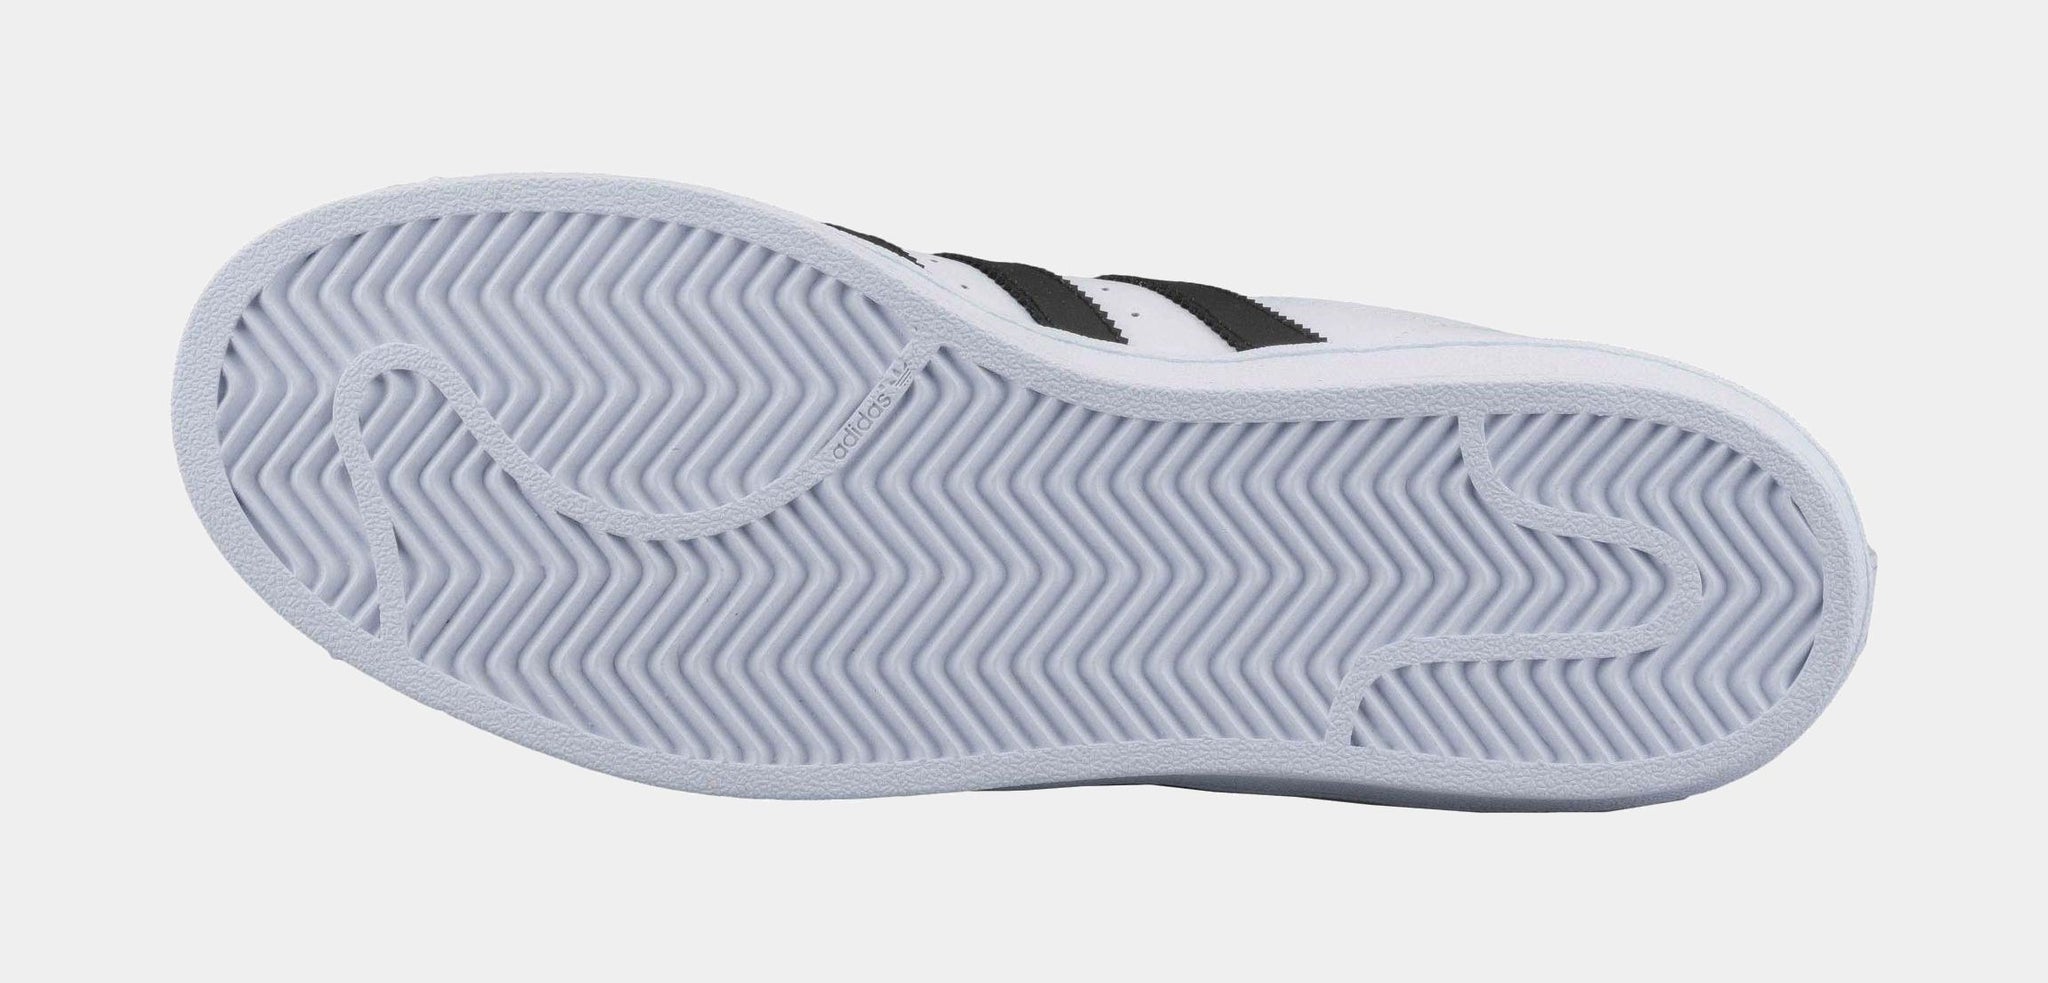 adidas Superstar 2 Original Foundation Shell Toe Mens Lifestyle Shoe White Black – Shoe Palace